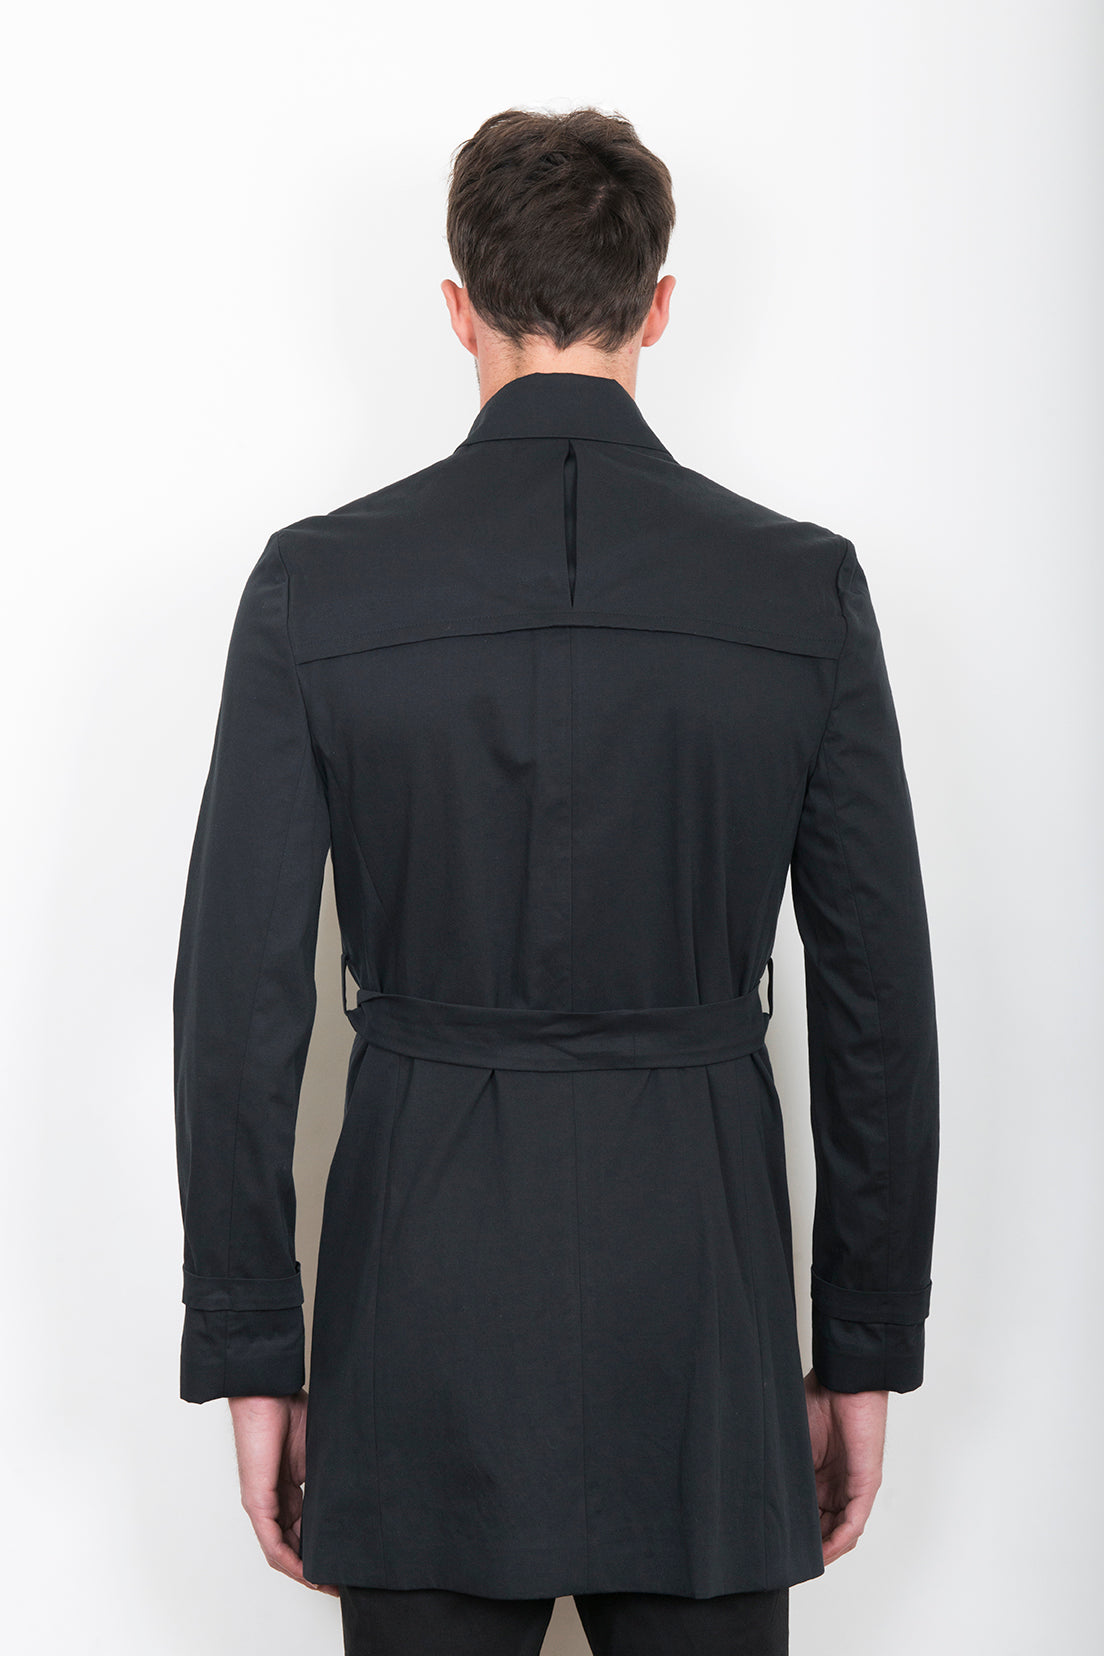 Sébastien Blondin trench coat veste jacket chic été summer coton cotton noir black créateur designer nouveau new basique basic mode fashion homme man men men's world